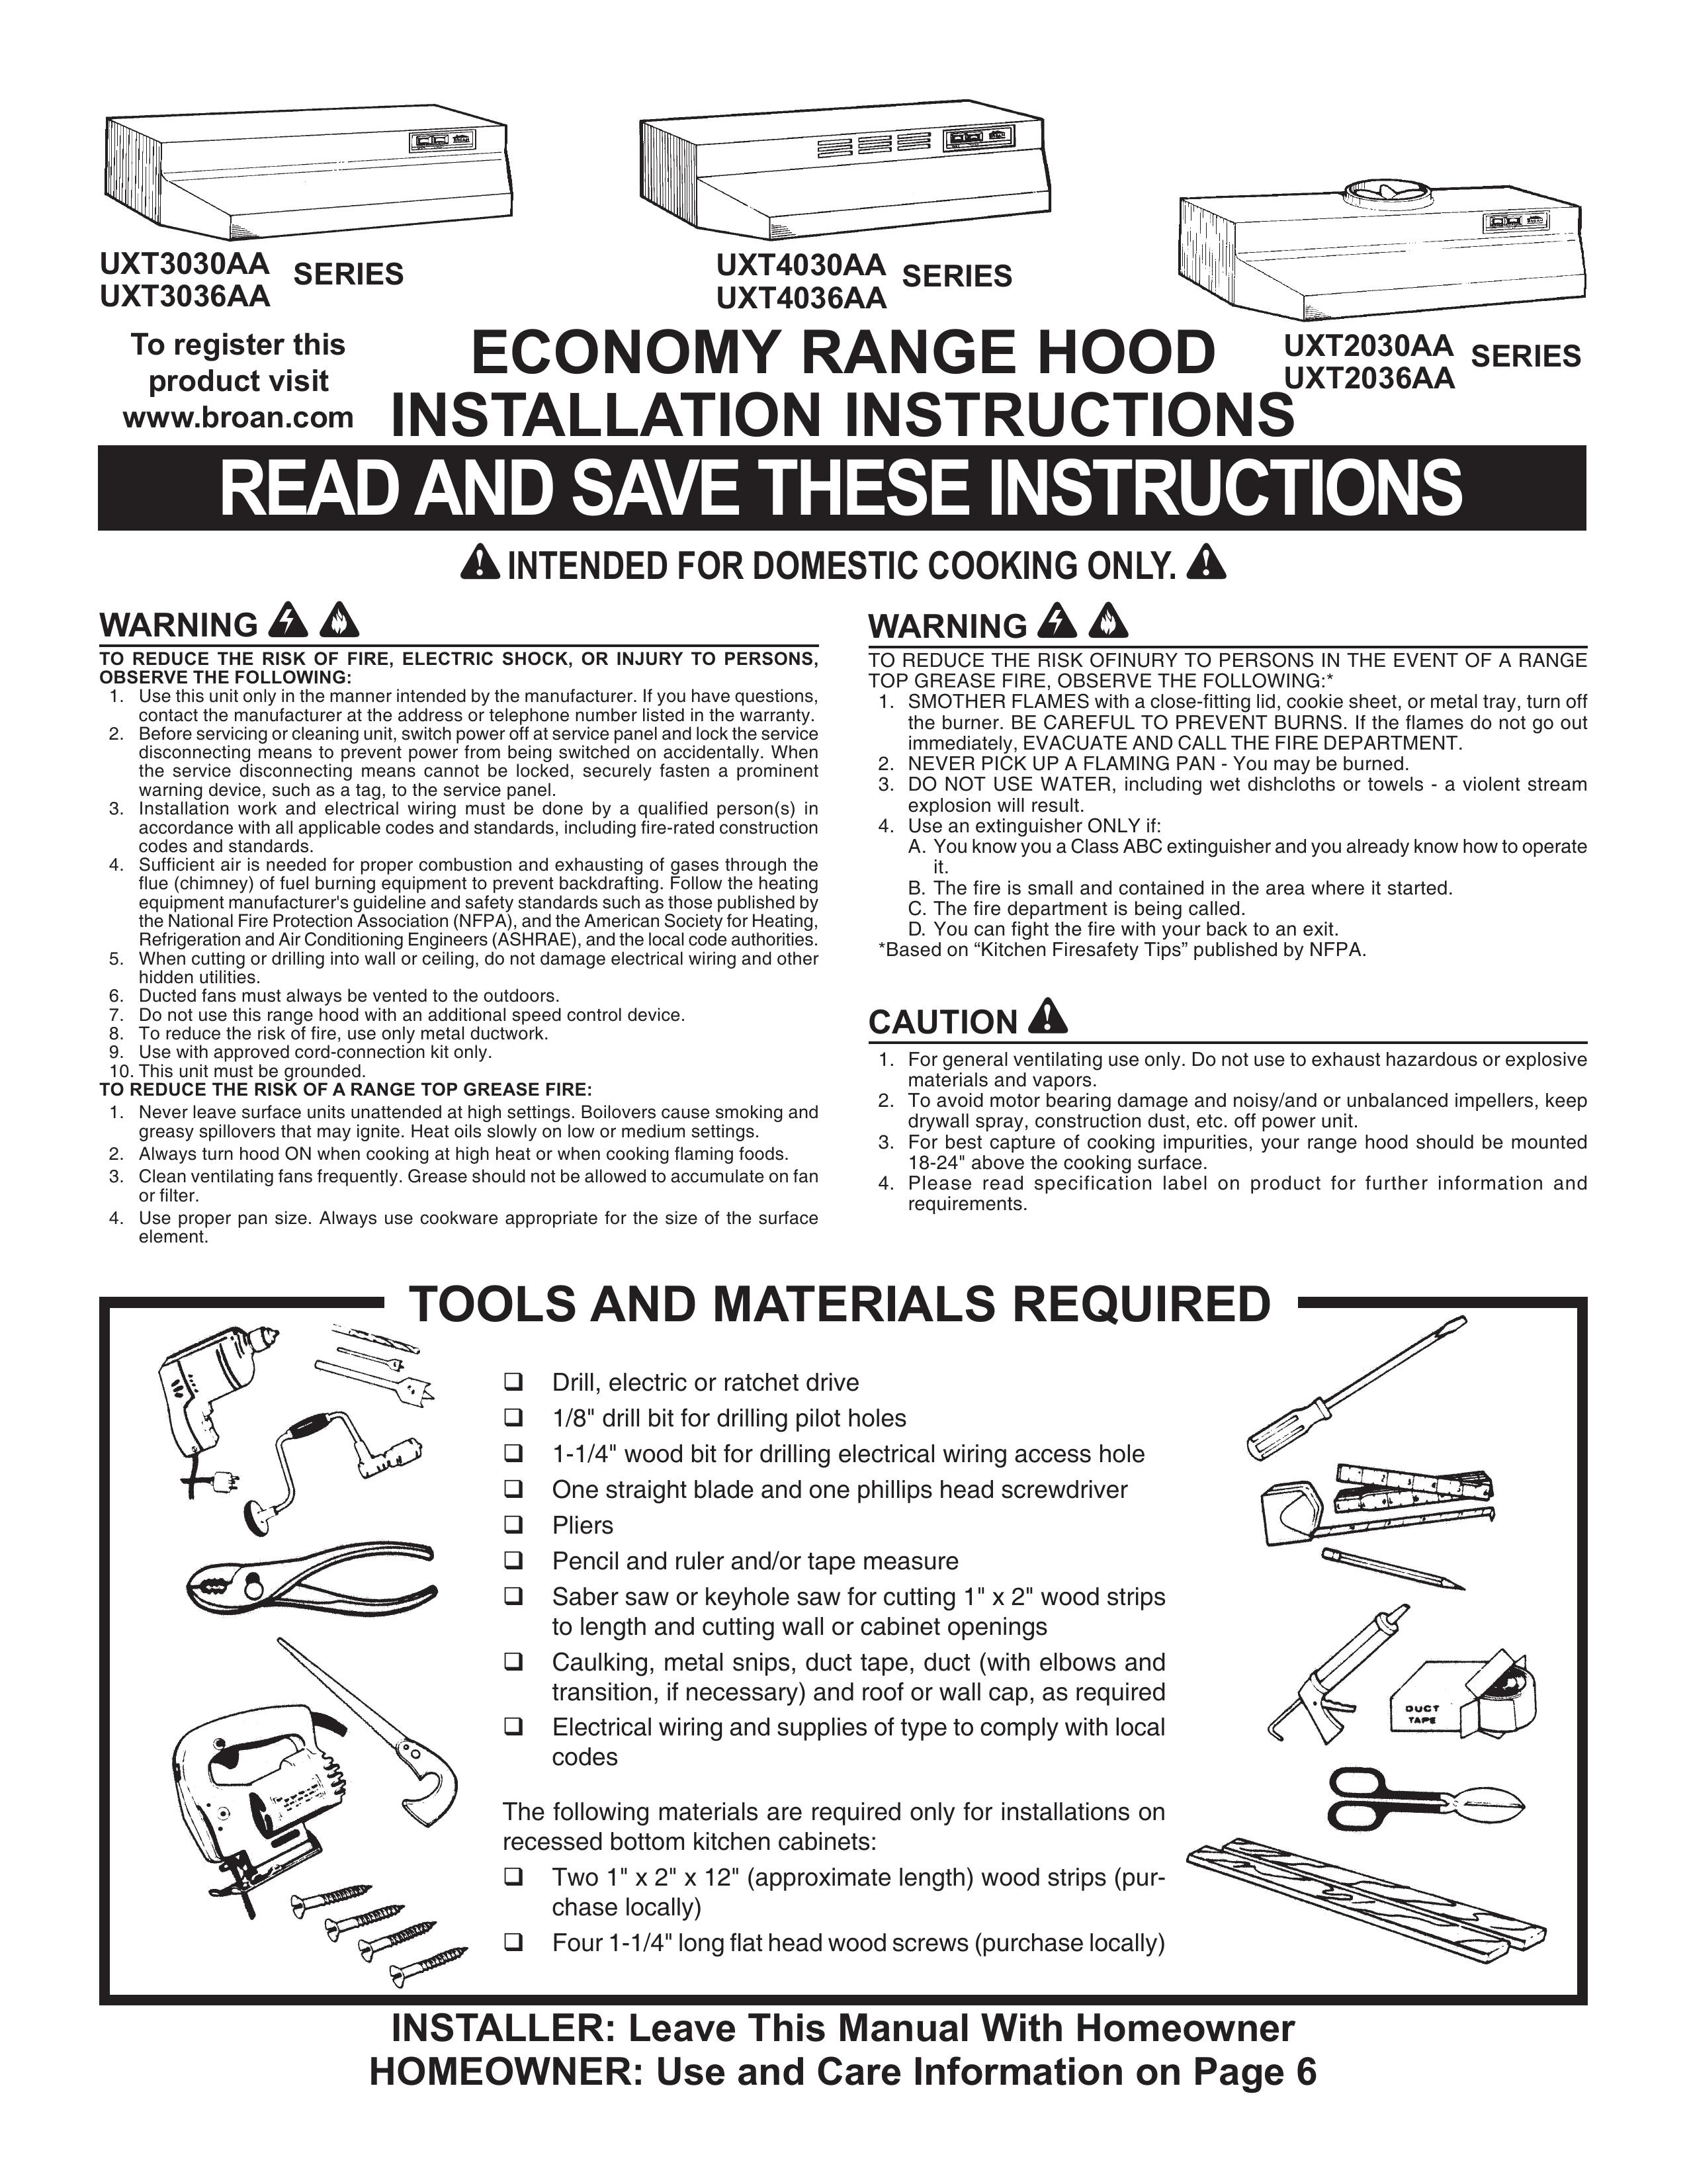 Maytag UXT3036AA Ventilation Hood User Manual